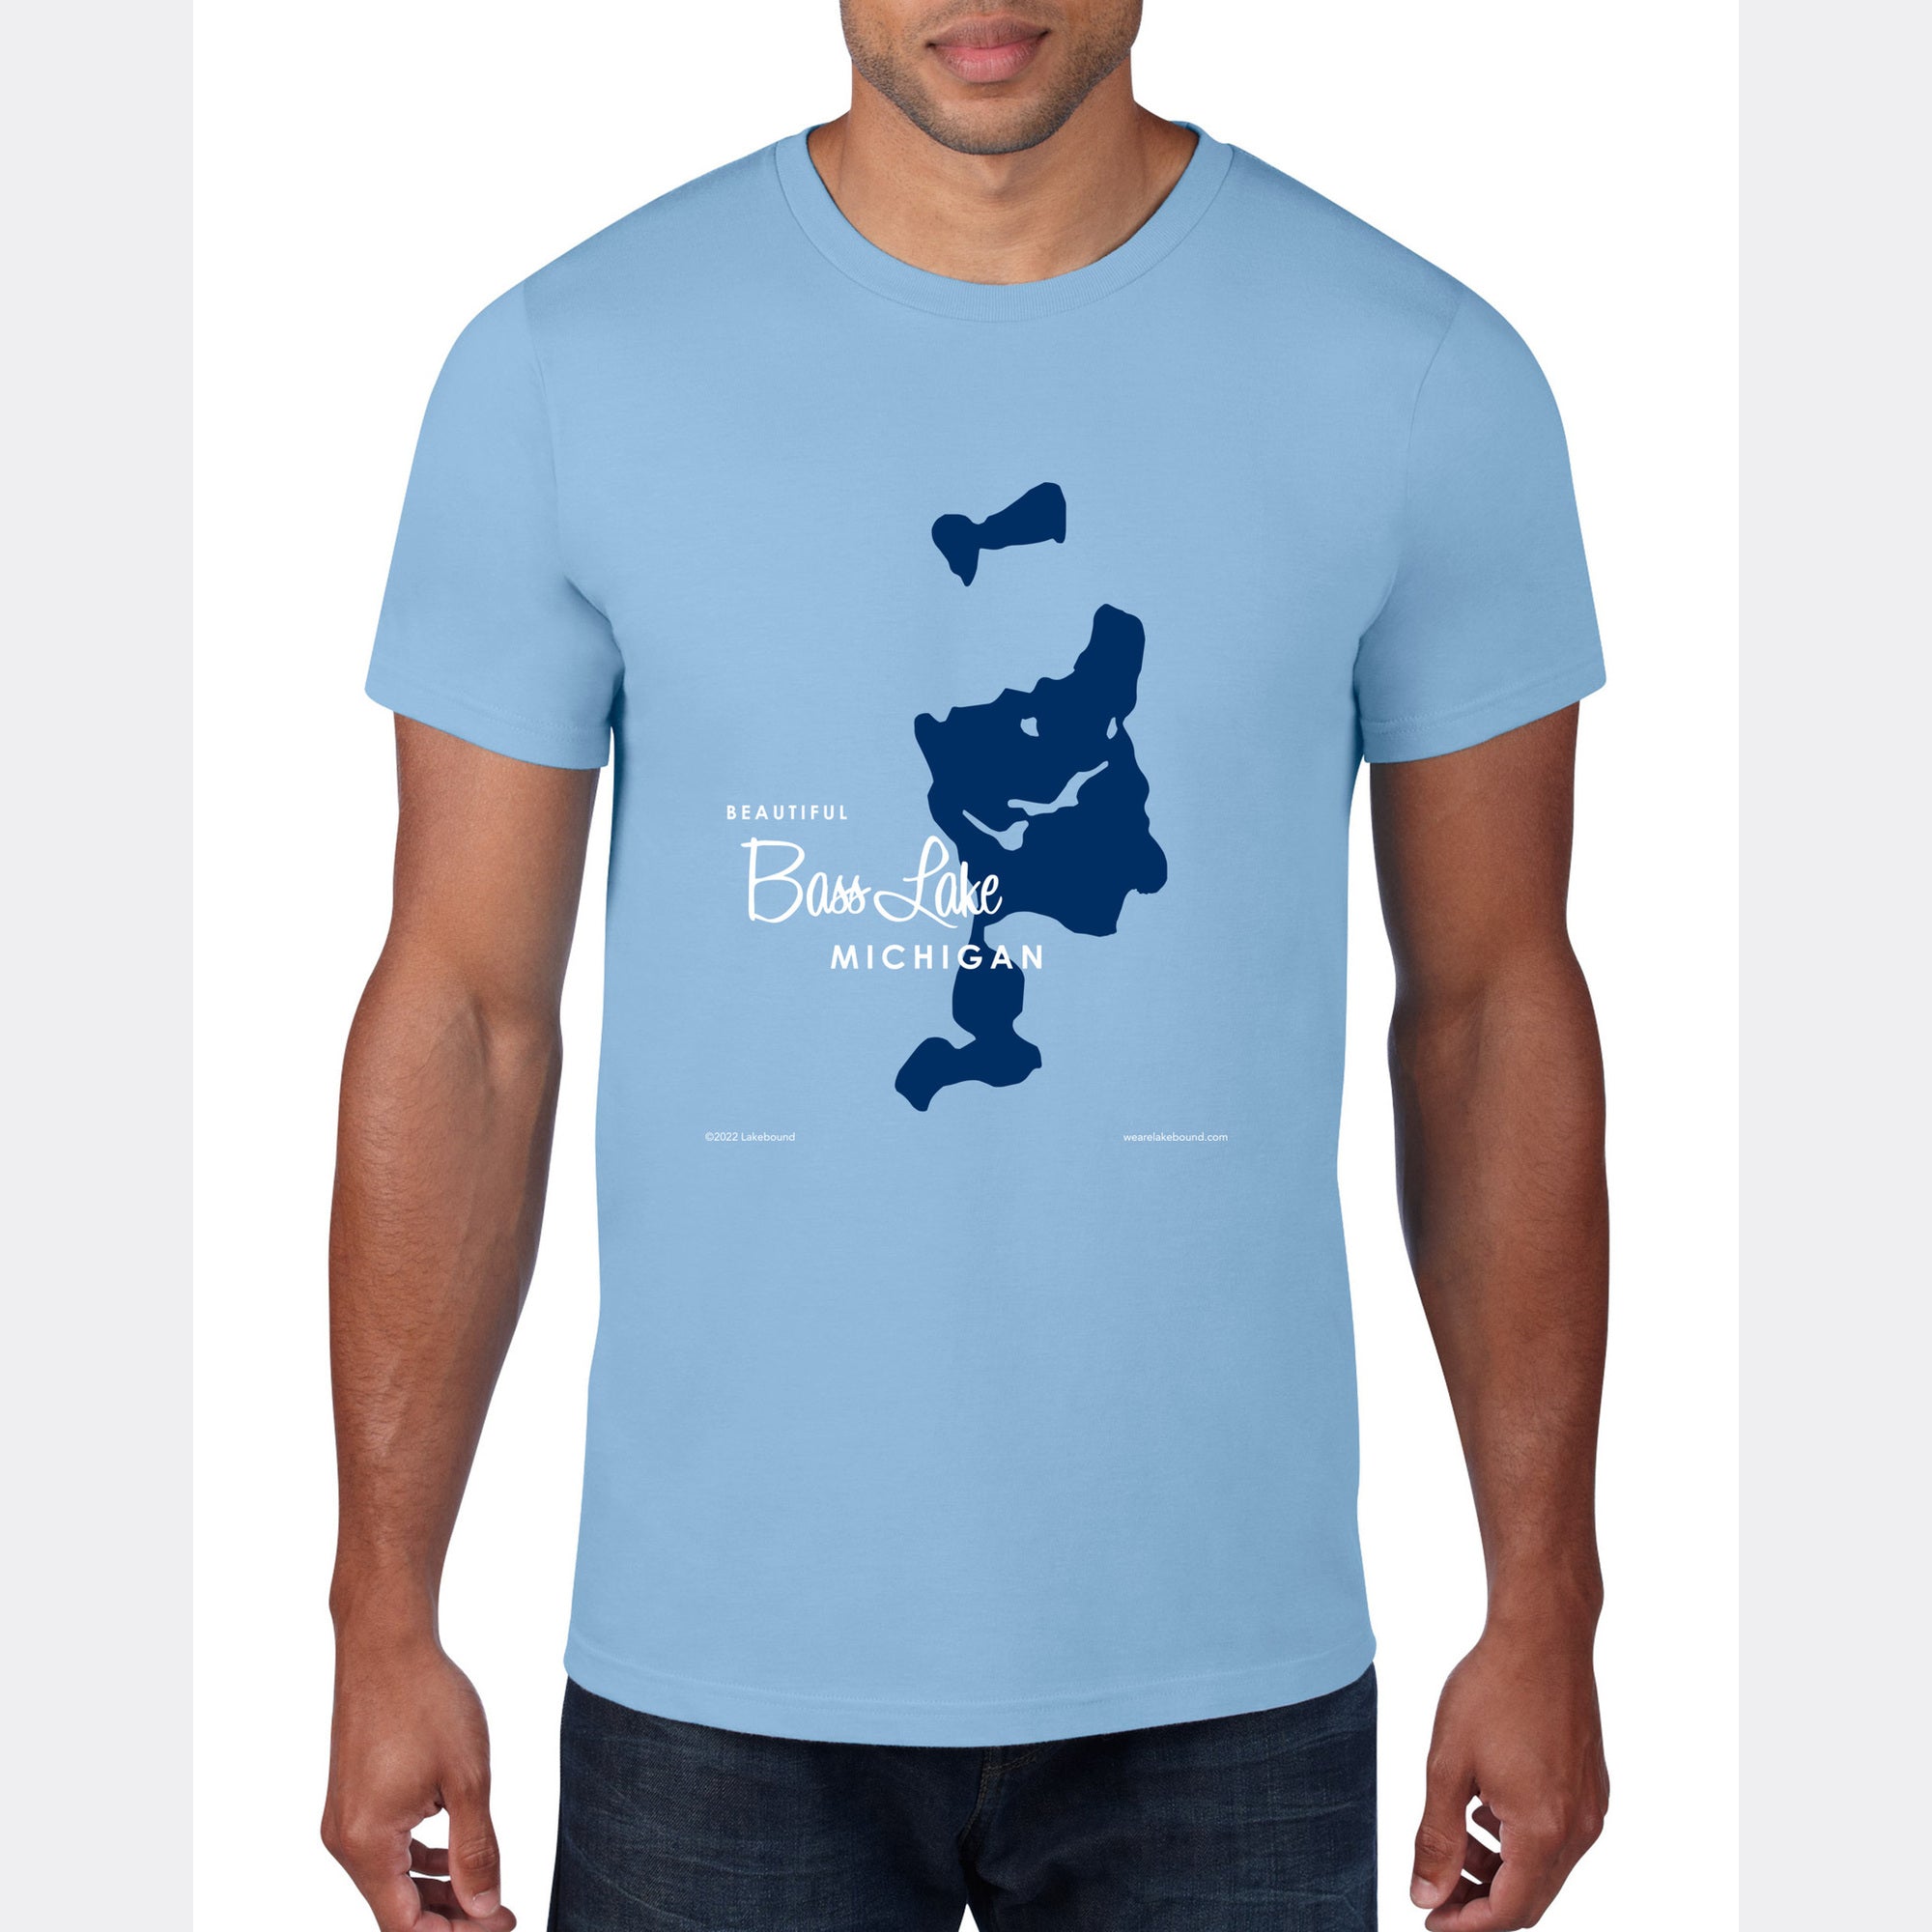 Bass Lake Michigan, T-Shirt